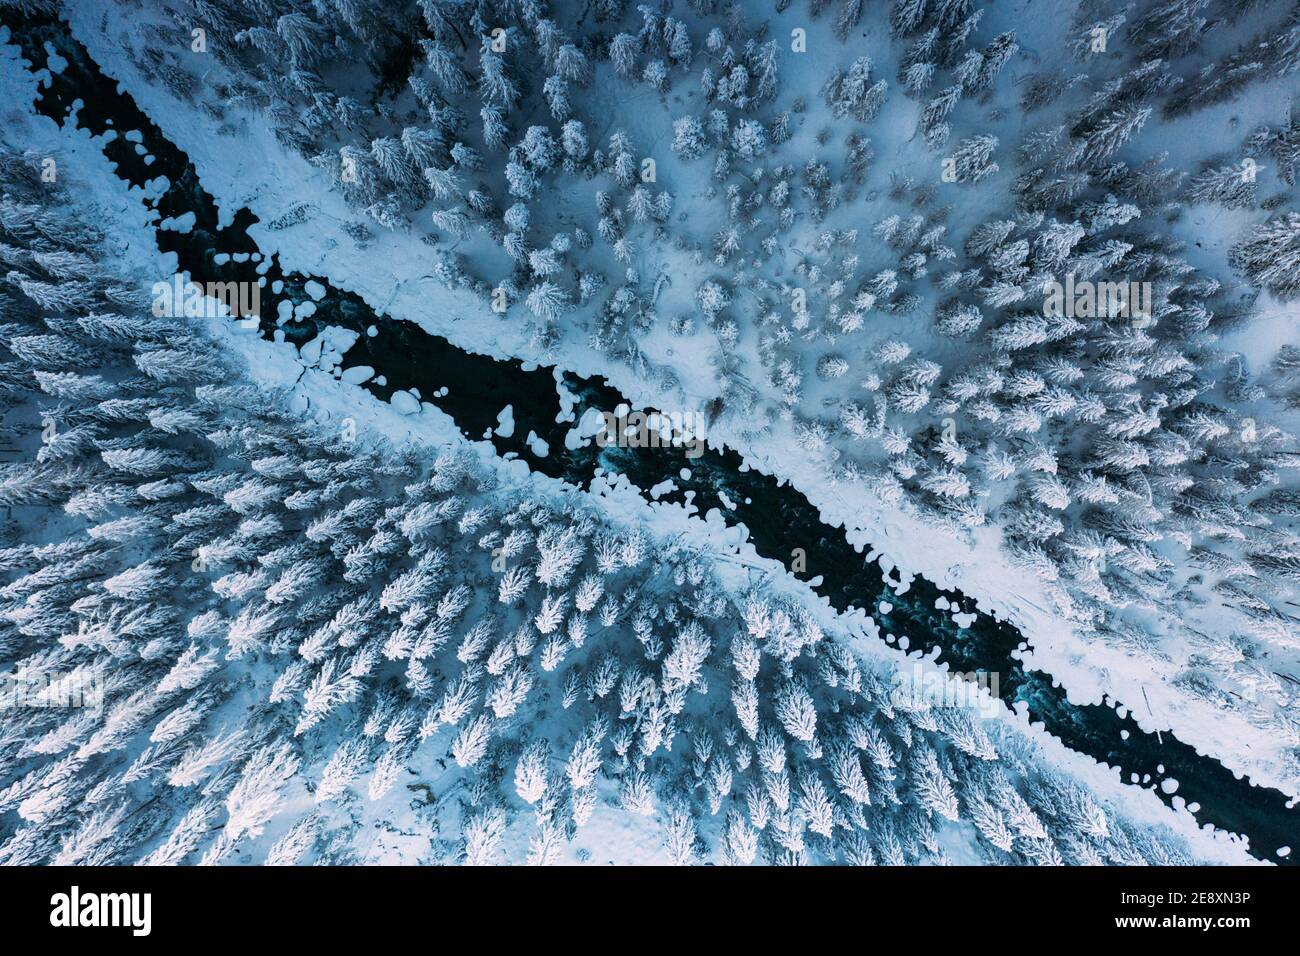 Vue aérienne d'une rivière gelée traversant une forêt hivernale de sapins couverts de neige, Suisse Banque D'Images